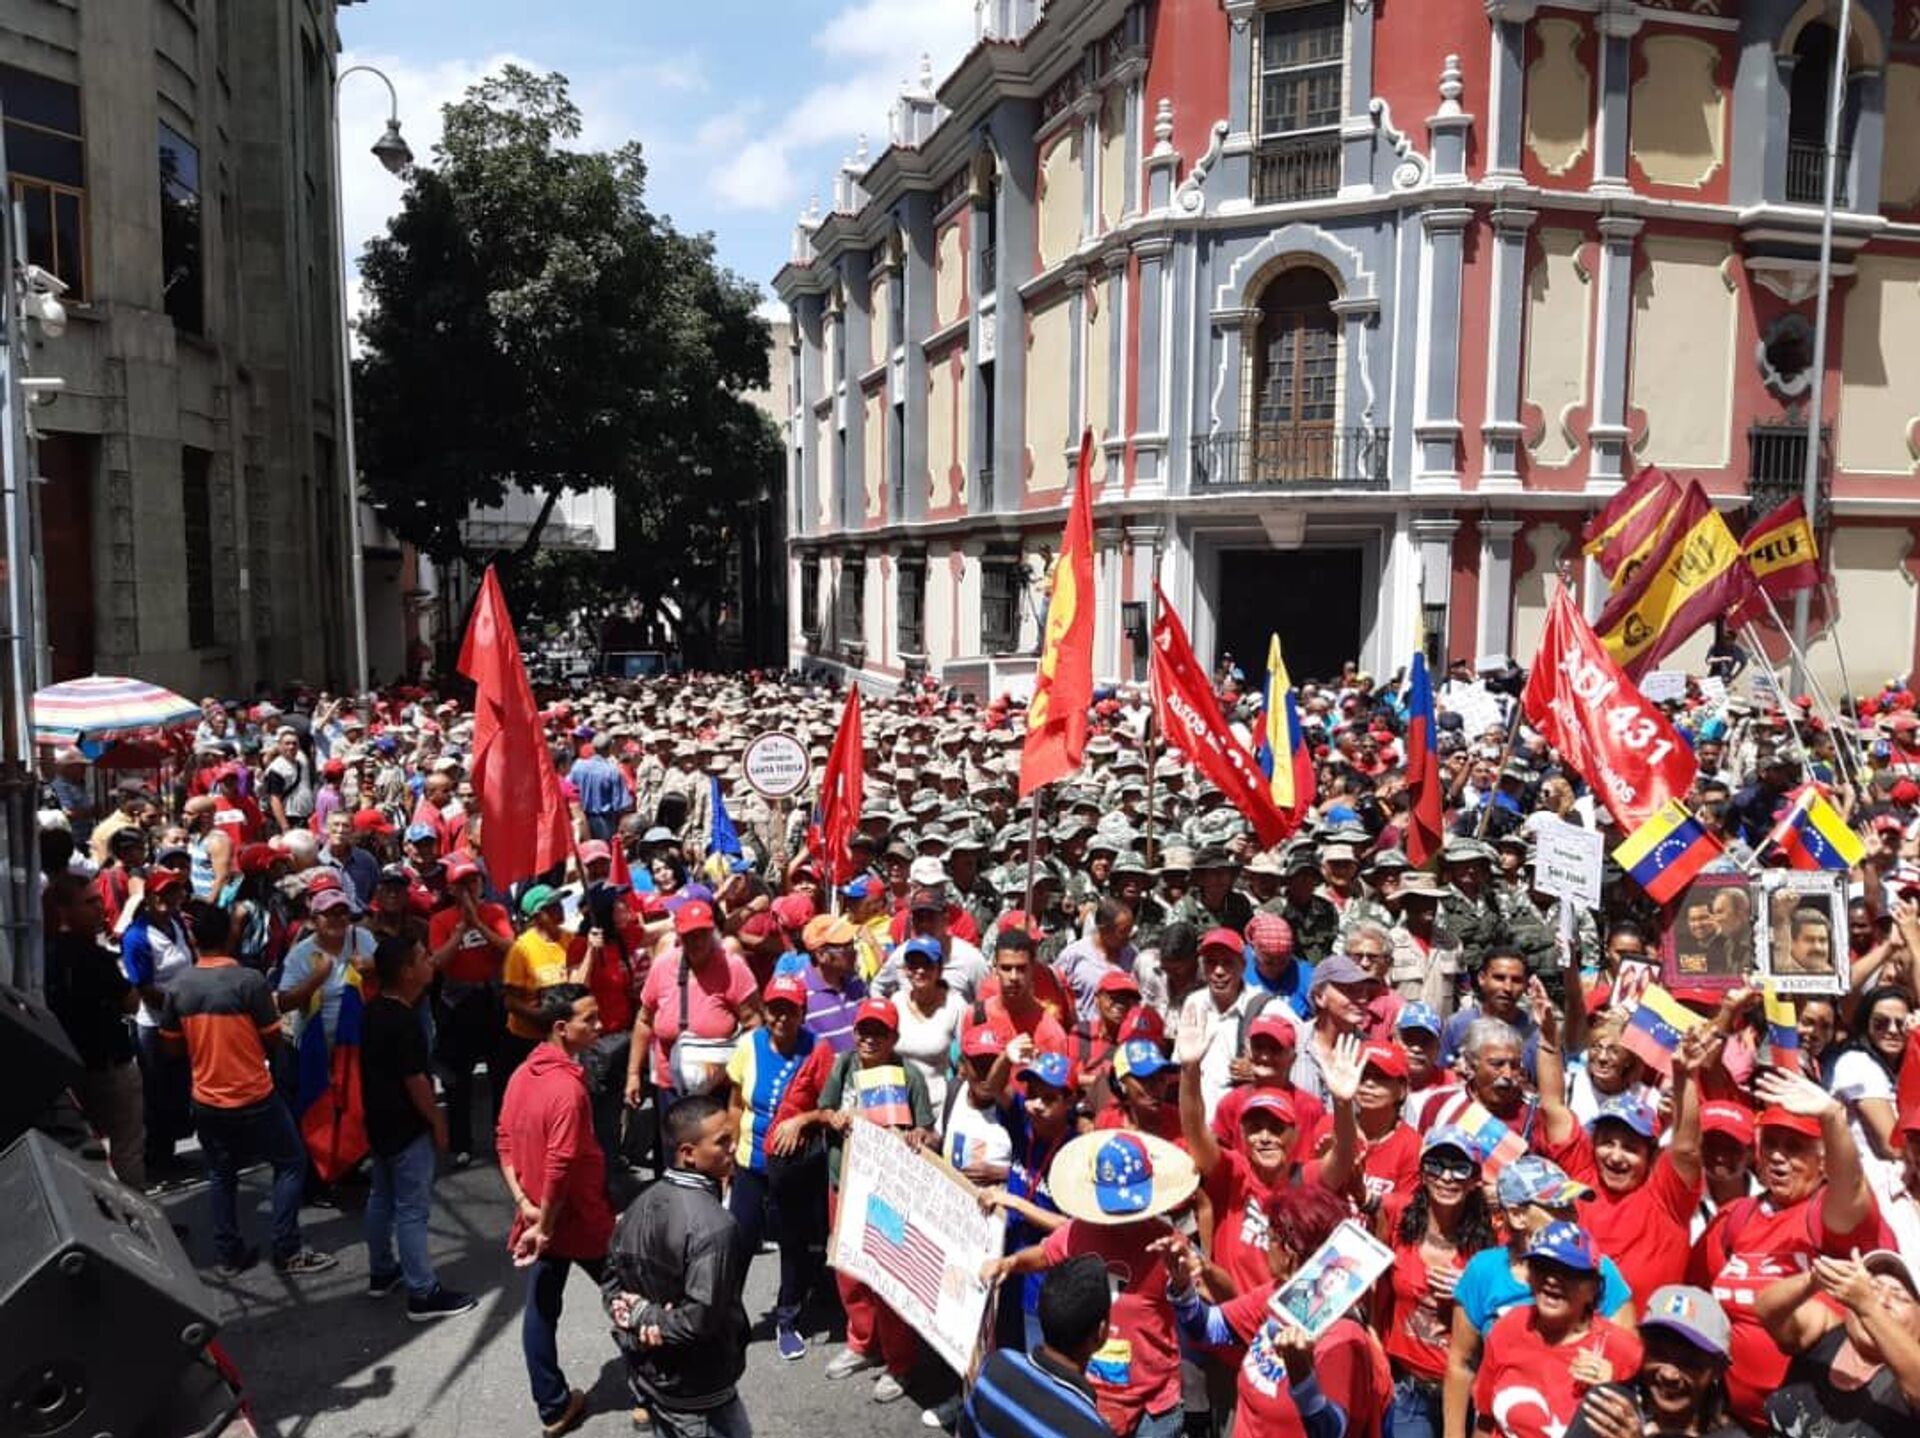 Apoiadores do governo Maduro saem às ruas para apoiar o Foro de São Paulo, em Caracas, Venezuela - Sputnik Brasil, 1920, 26.08.2022